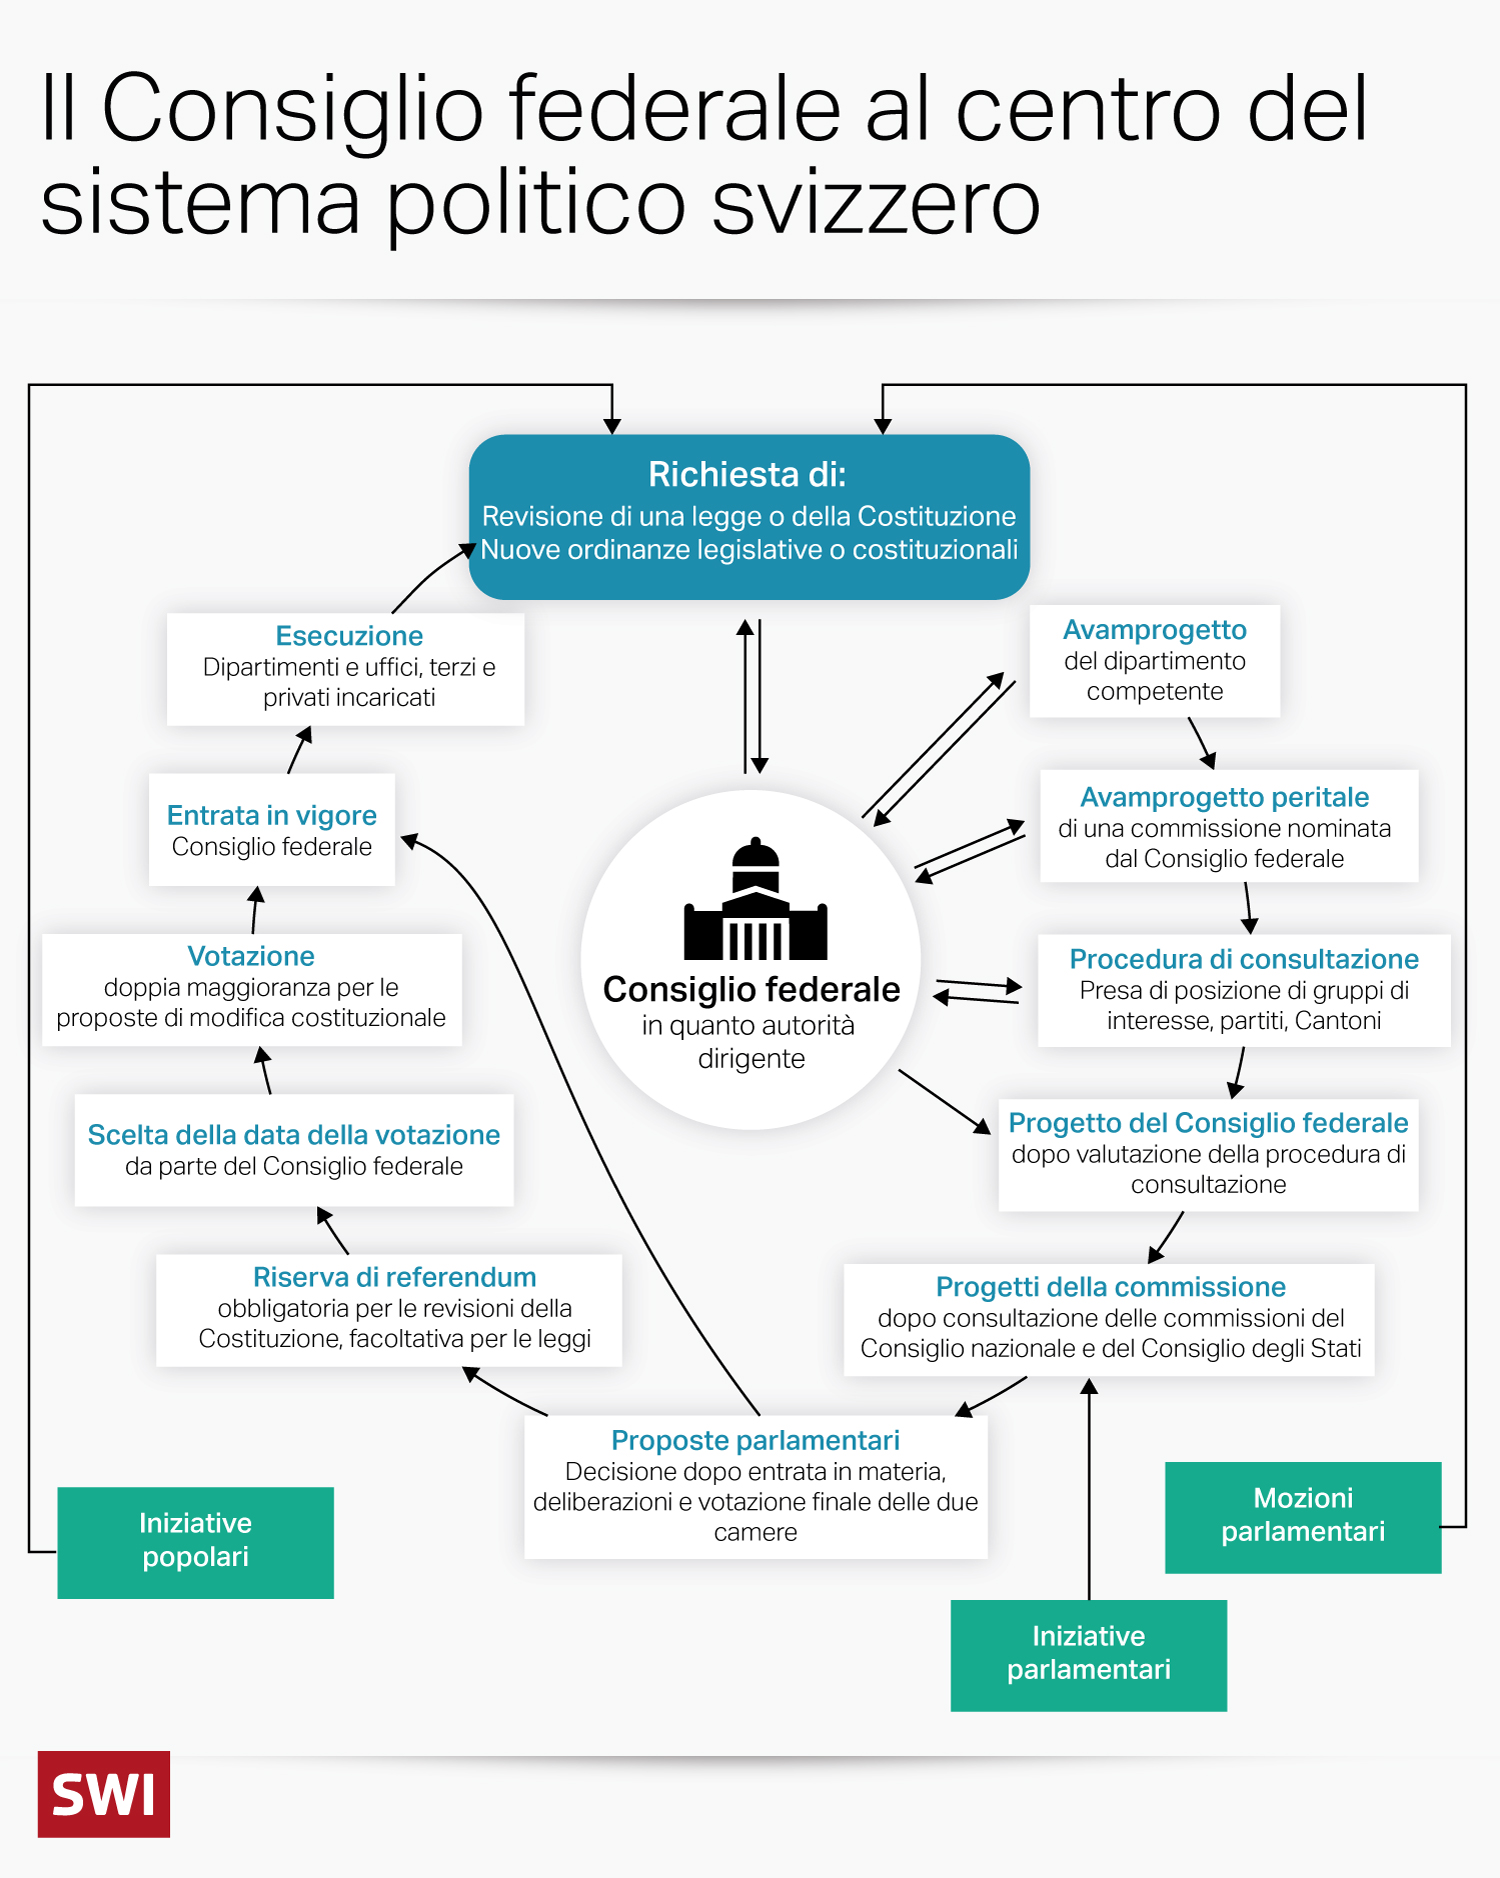 infografica che illustra il ruolo del consiglio federale nel sistema politico svizzero